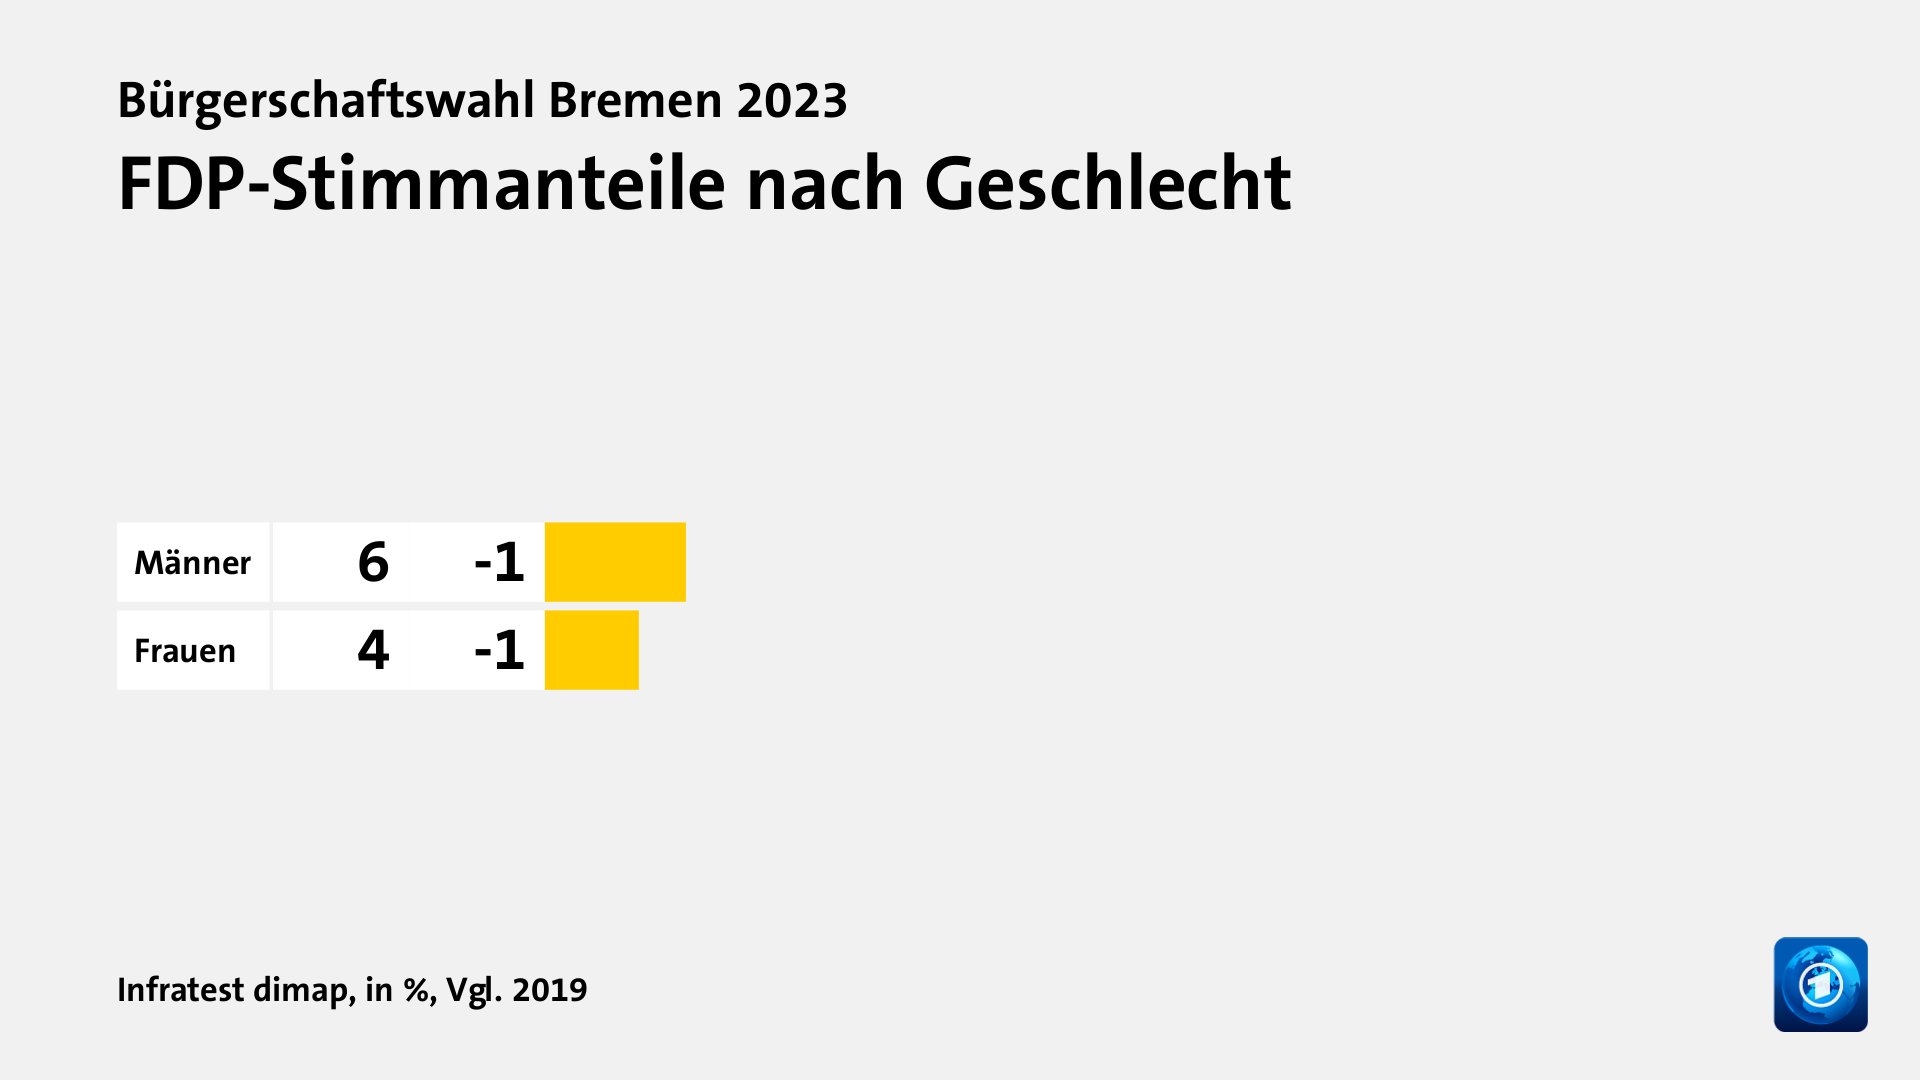 FDP-Stimmanteile nach Geschlecht, in %, Vgl. 2019: Männer 6, Frauen 4, Quelle: Infratest dimap